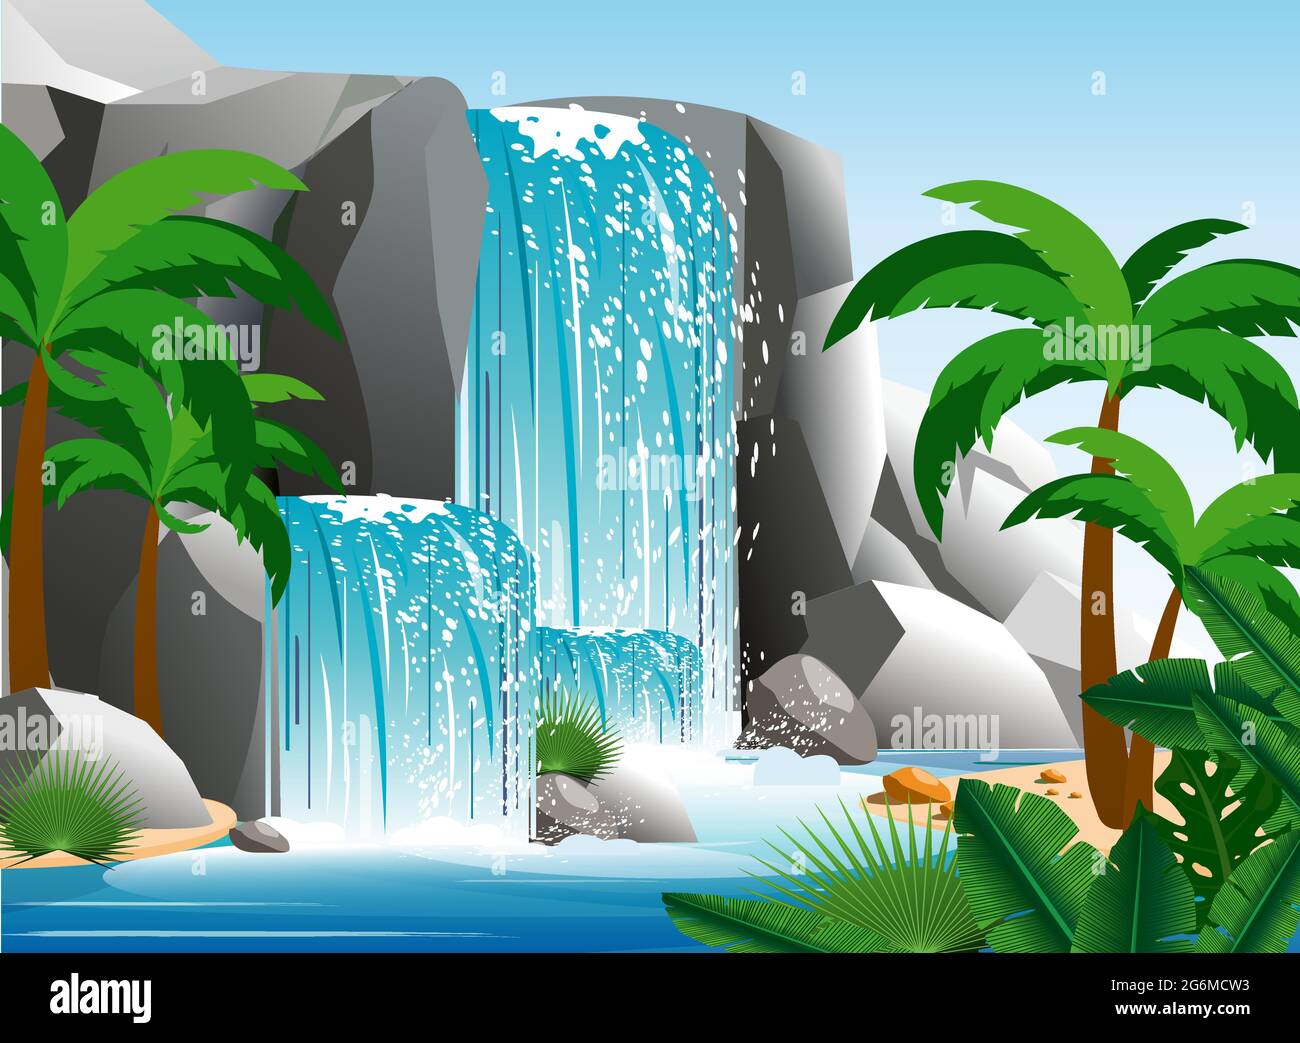 Illustration vectorielle de la magnifique cascade dans le paysage tropical de la jungle avec des arbres, des rochers et le ciel. Palmier vert avec nature sauvage et feuillage de brousse Illustration de Vecteur